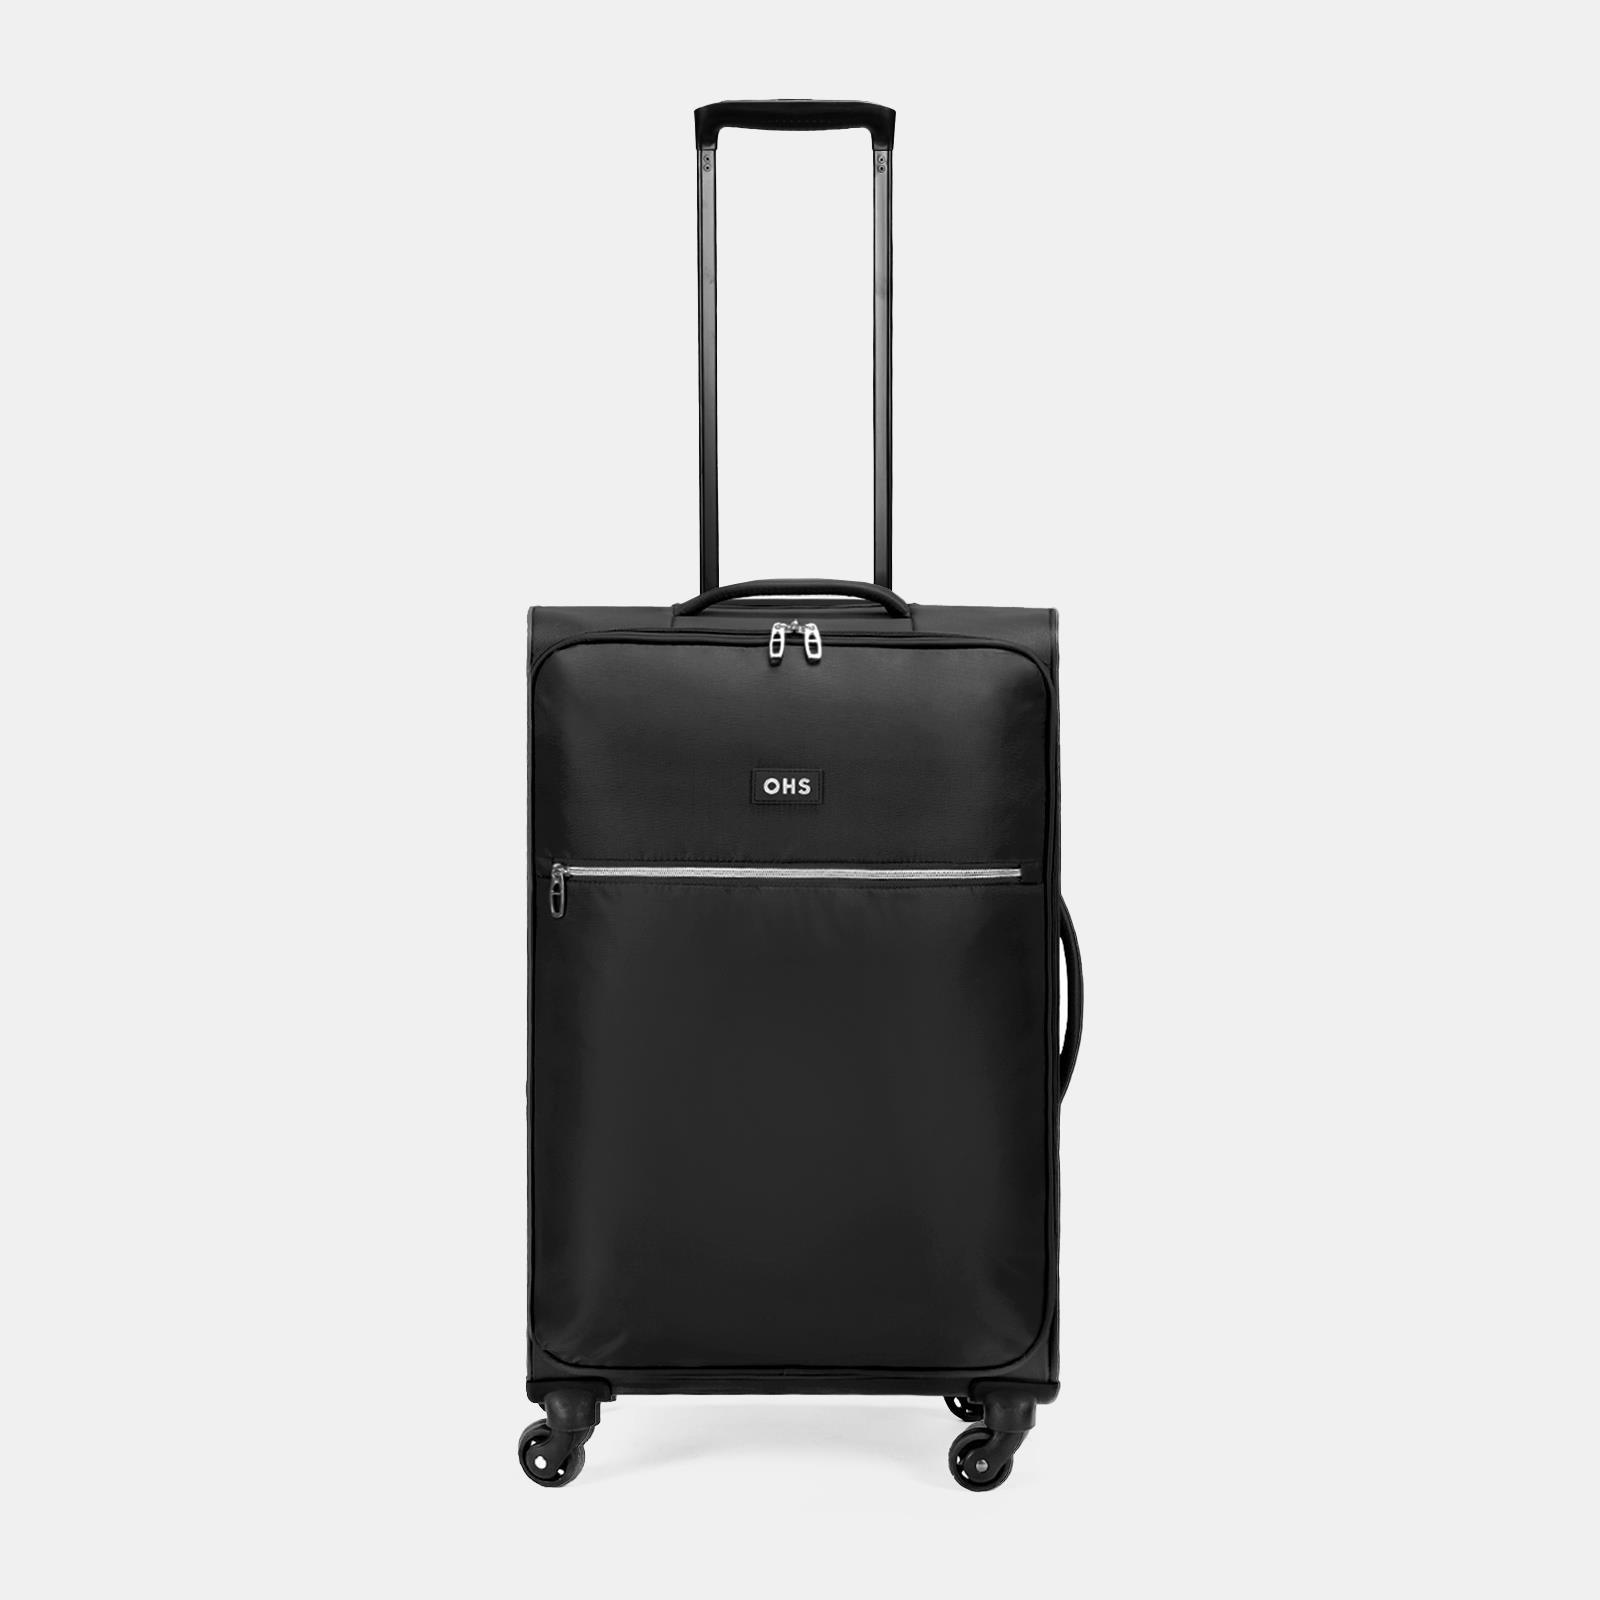 Medium Suitcase Luggage Soft Shell Travel Case Bag